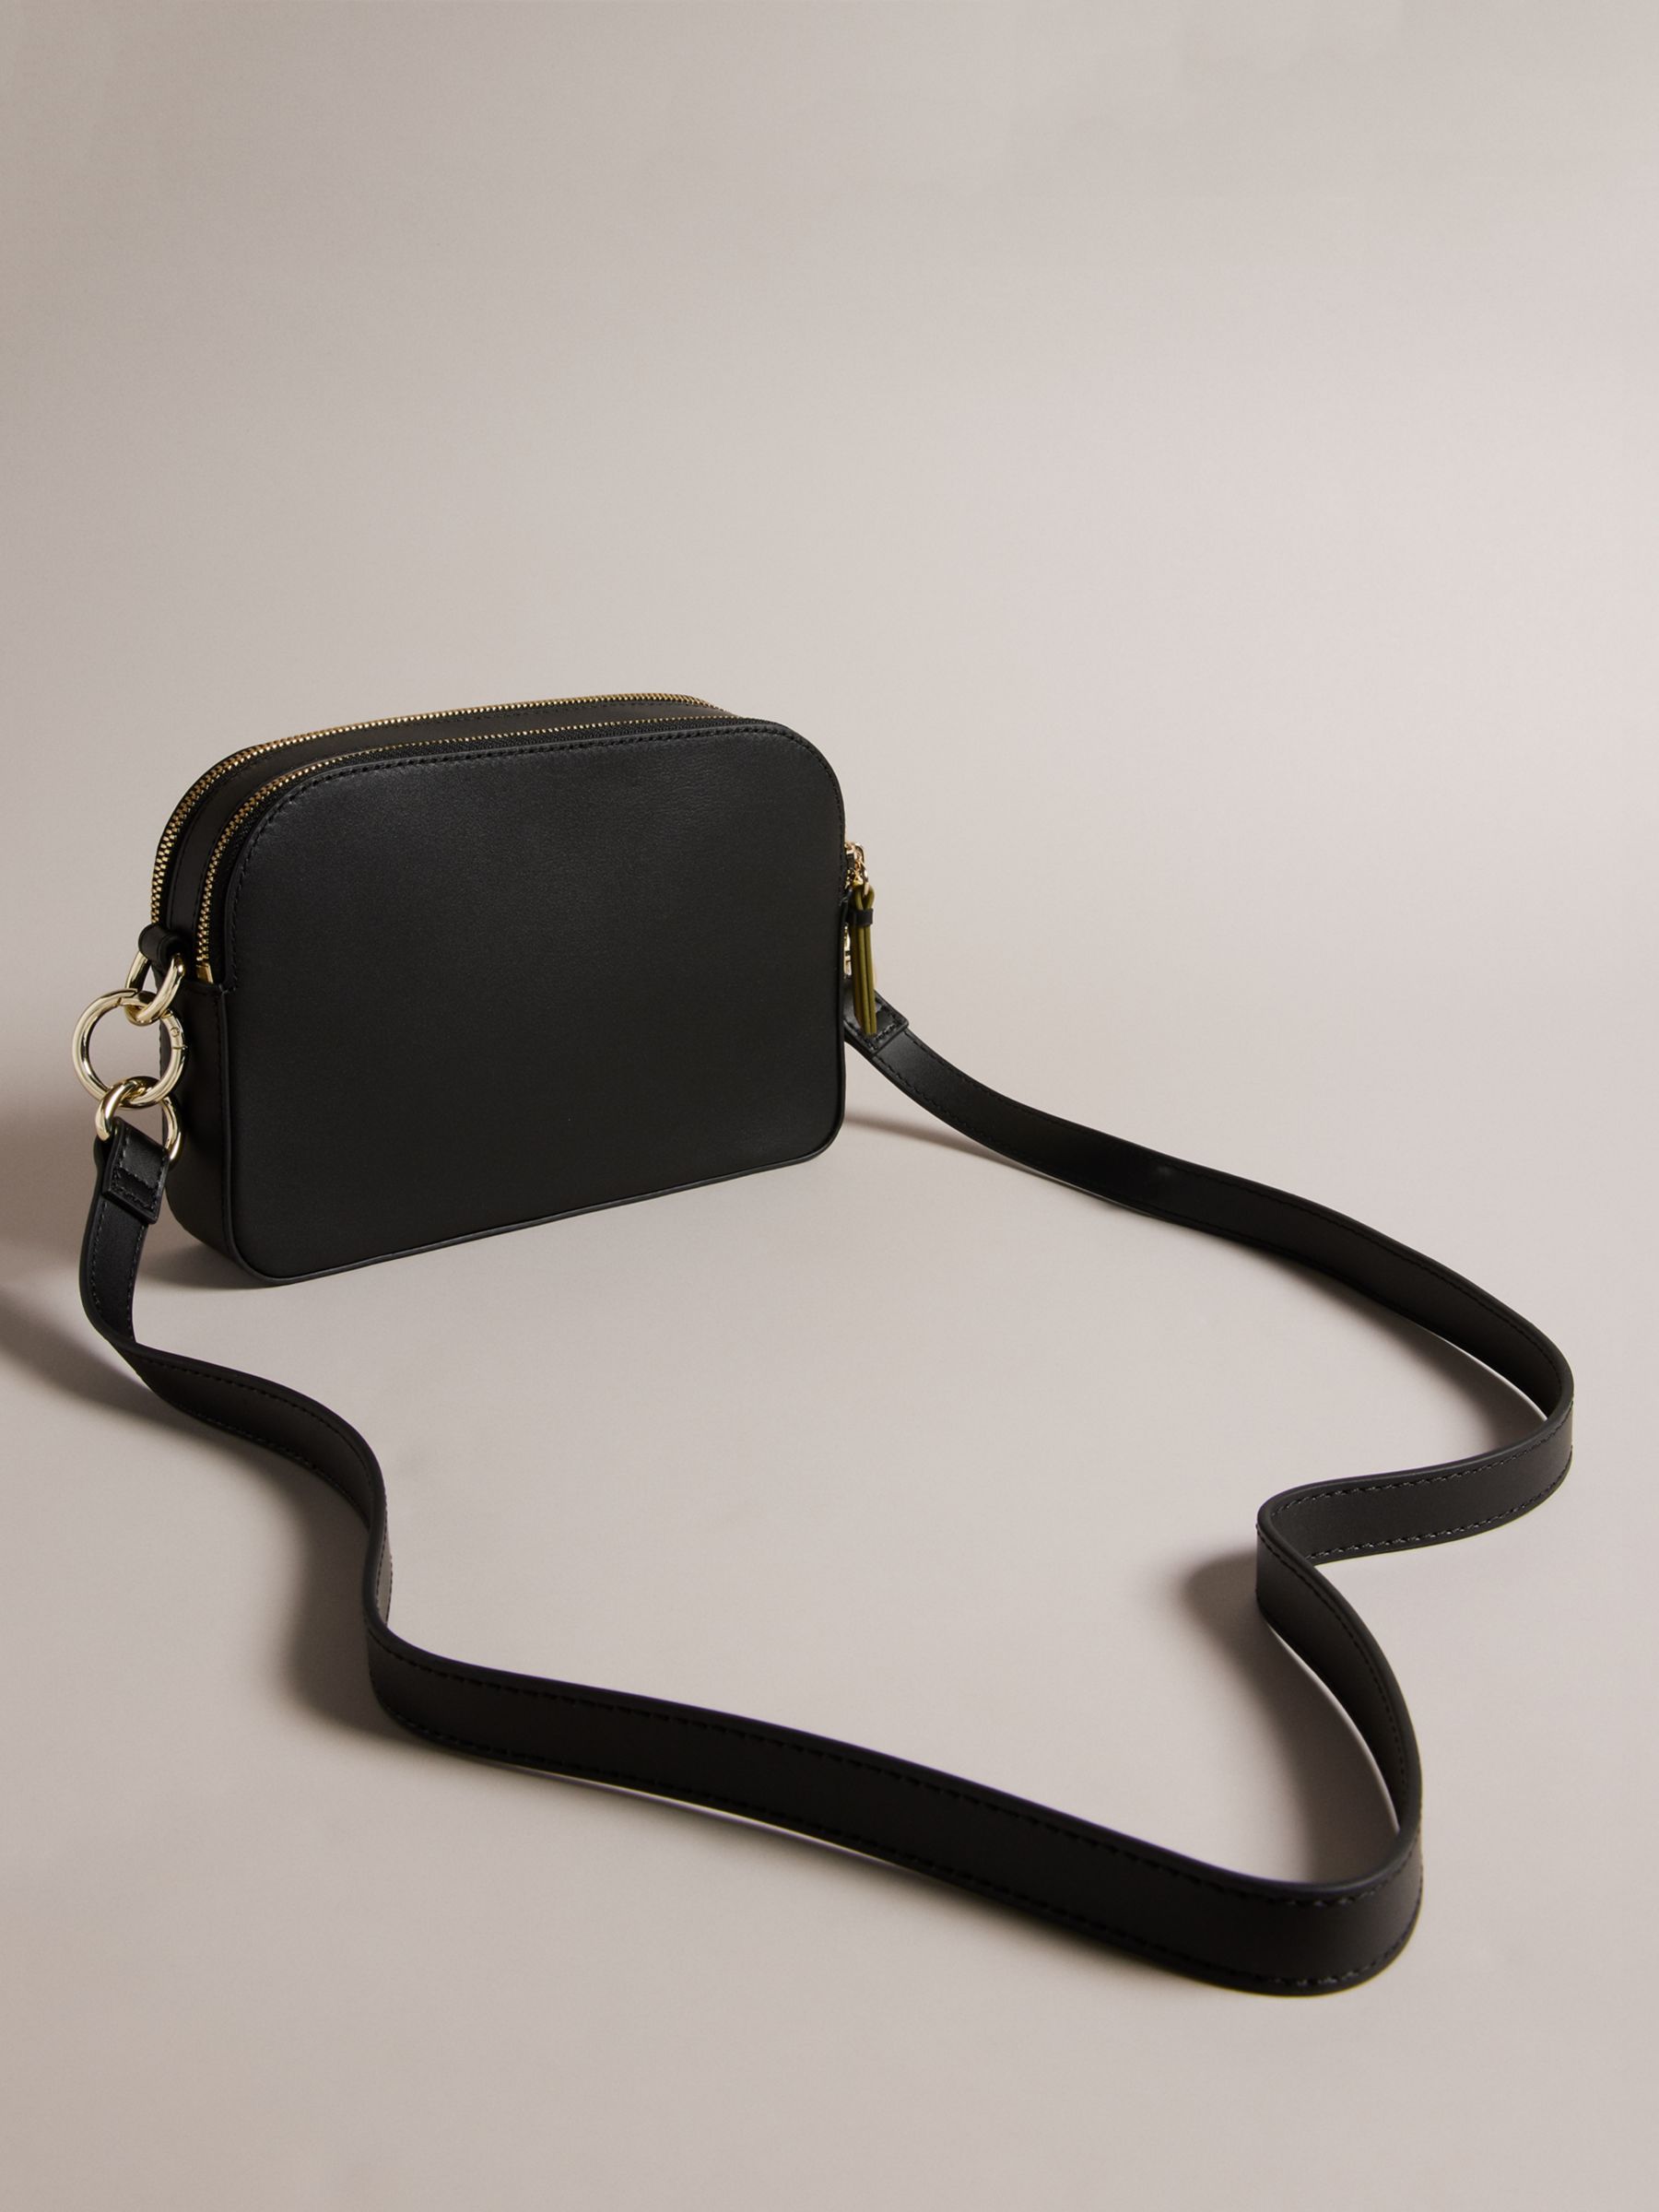 Buy Ted Baker Darcelo Smooth Leather Camera Bag Online at johnlewis.com